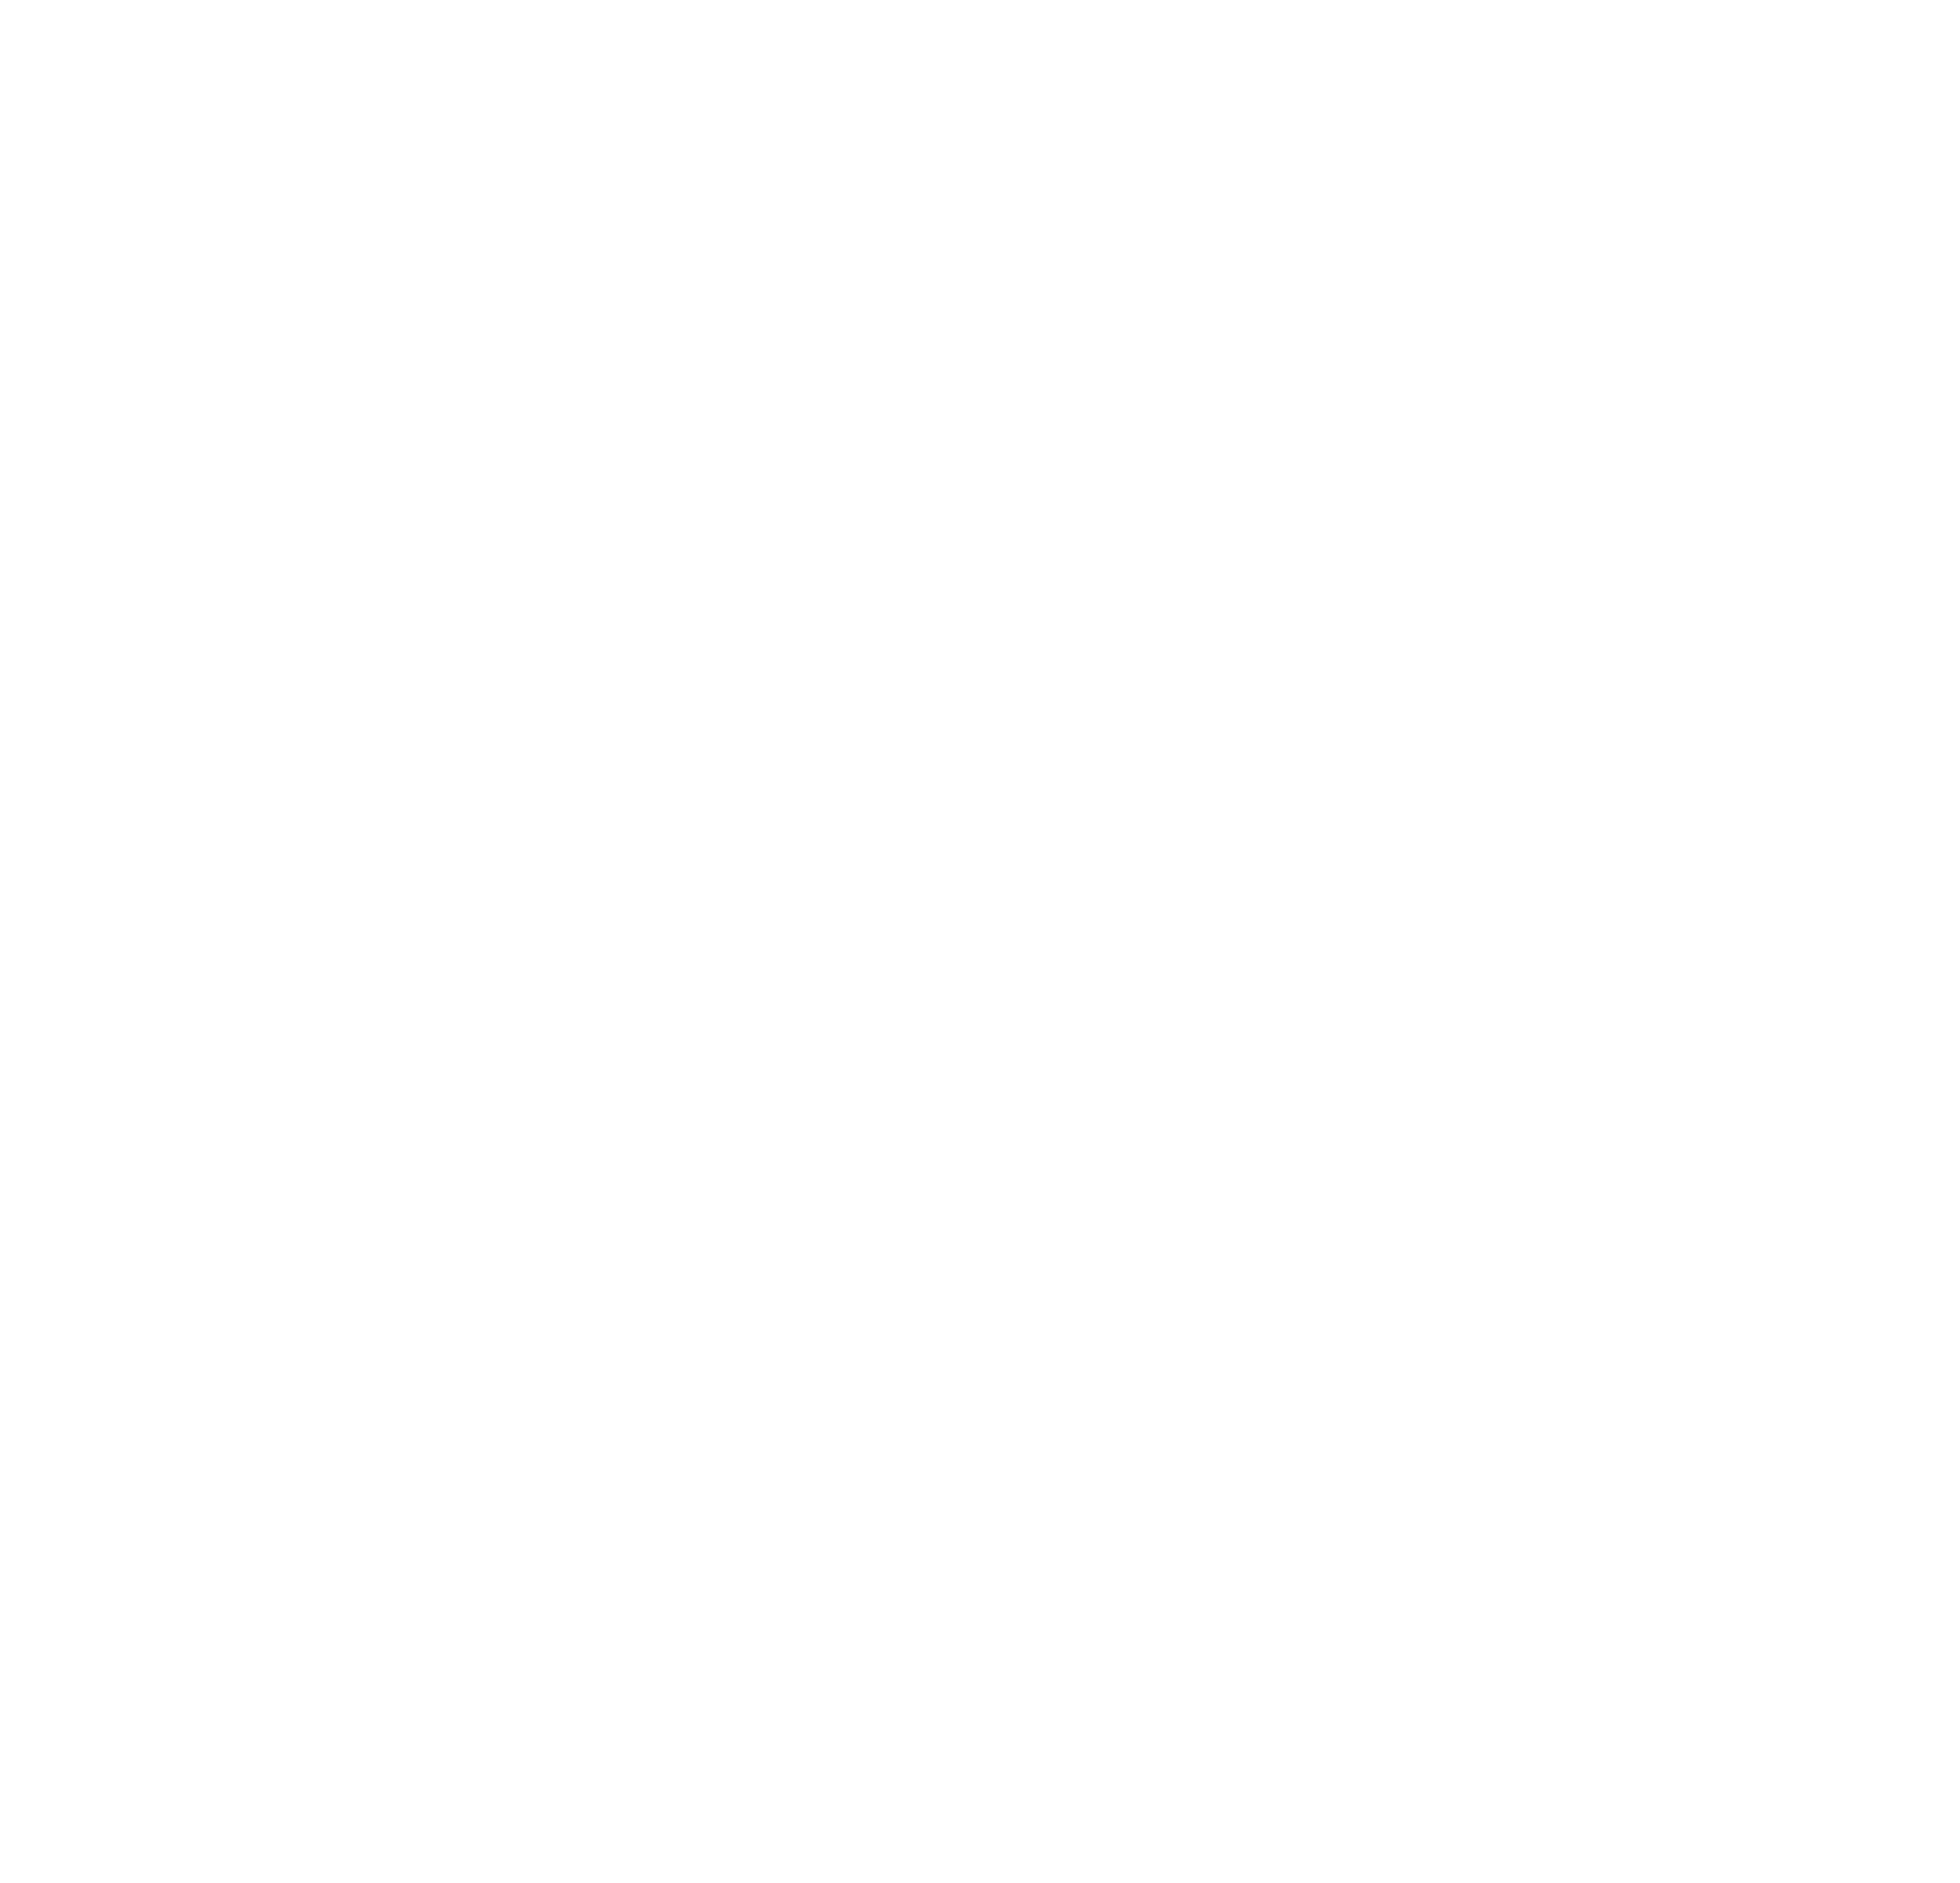 Sperlonga Data & Analytics